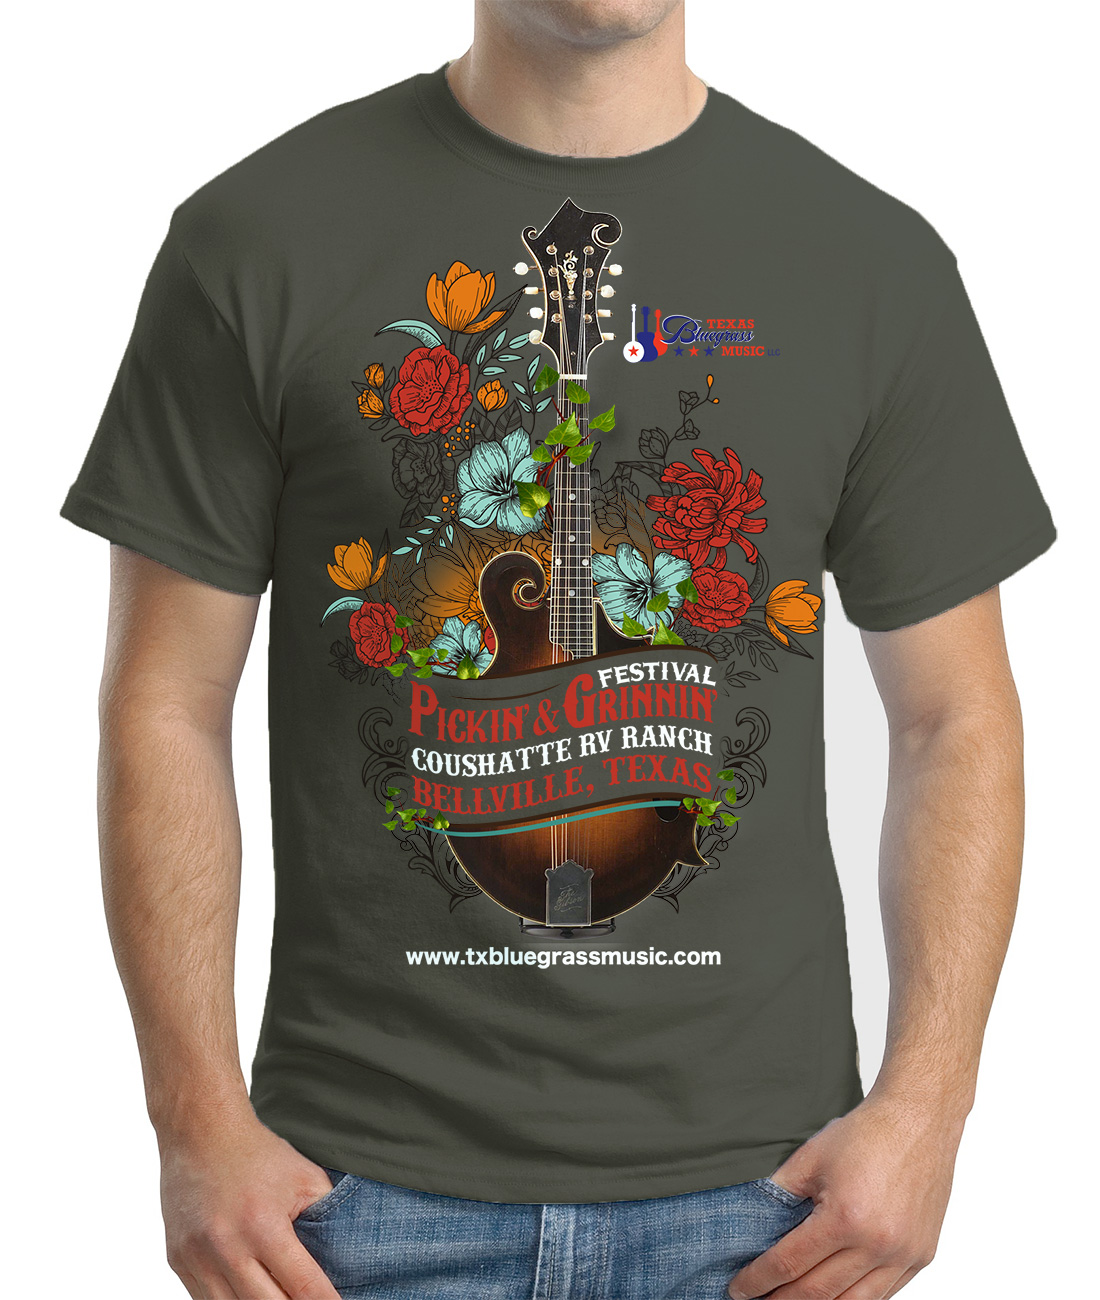 Texas Bluegrass Music T-shirt Design